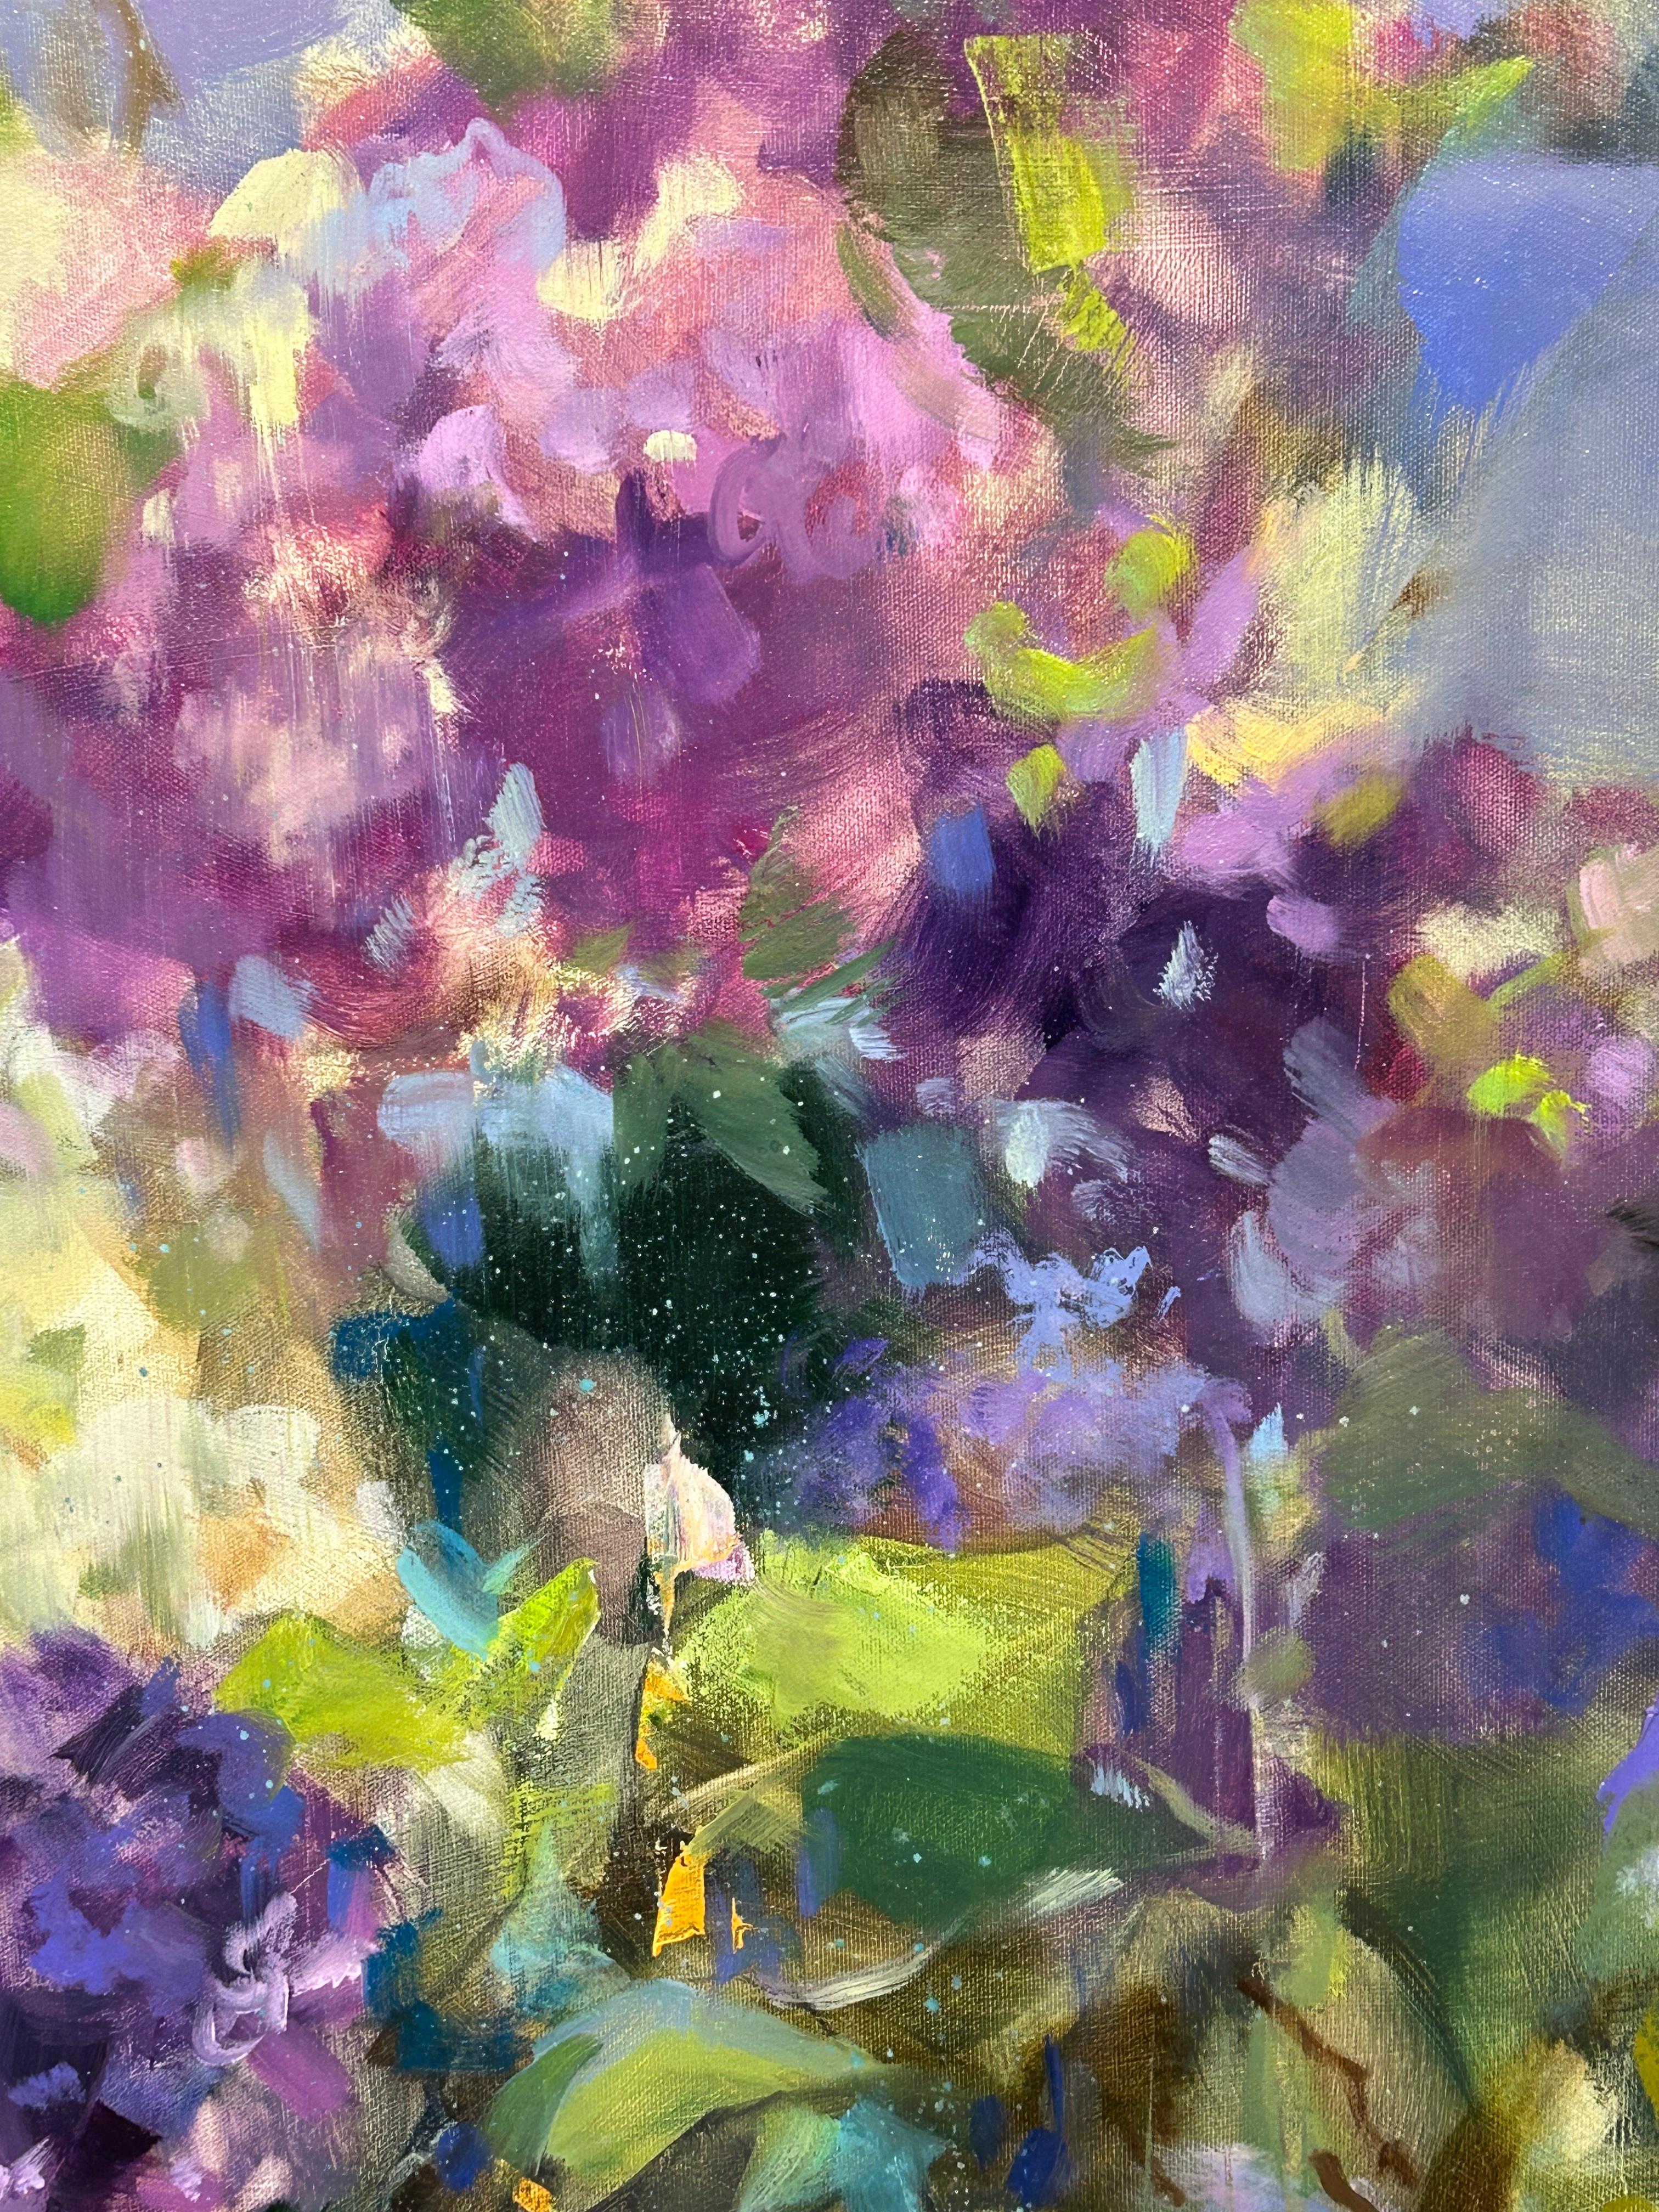 Œuvre originale à l'huile sur toile de l'artiste russo-canadienne Anna Razumovskaya représentant des fleurs violettes de style impressionniste et un vase. Le pinceau doux caractéristique de Razumovskaya est mis en évidence dans cette pièce, créant